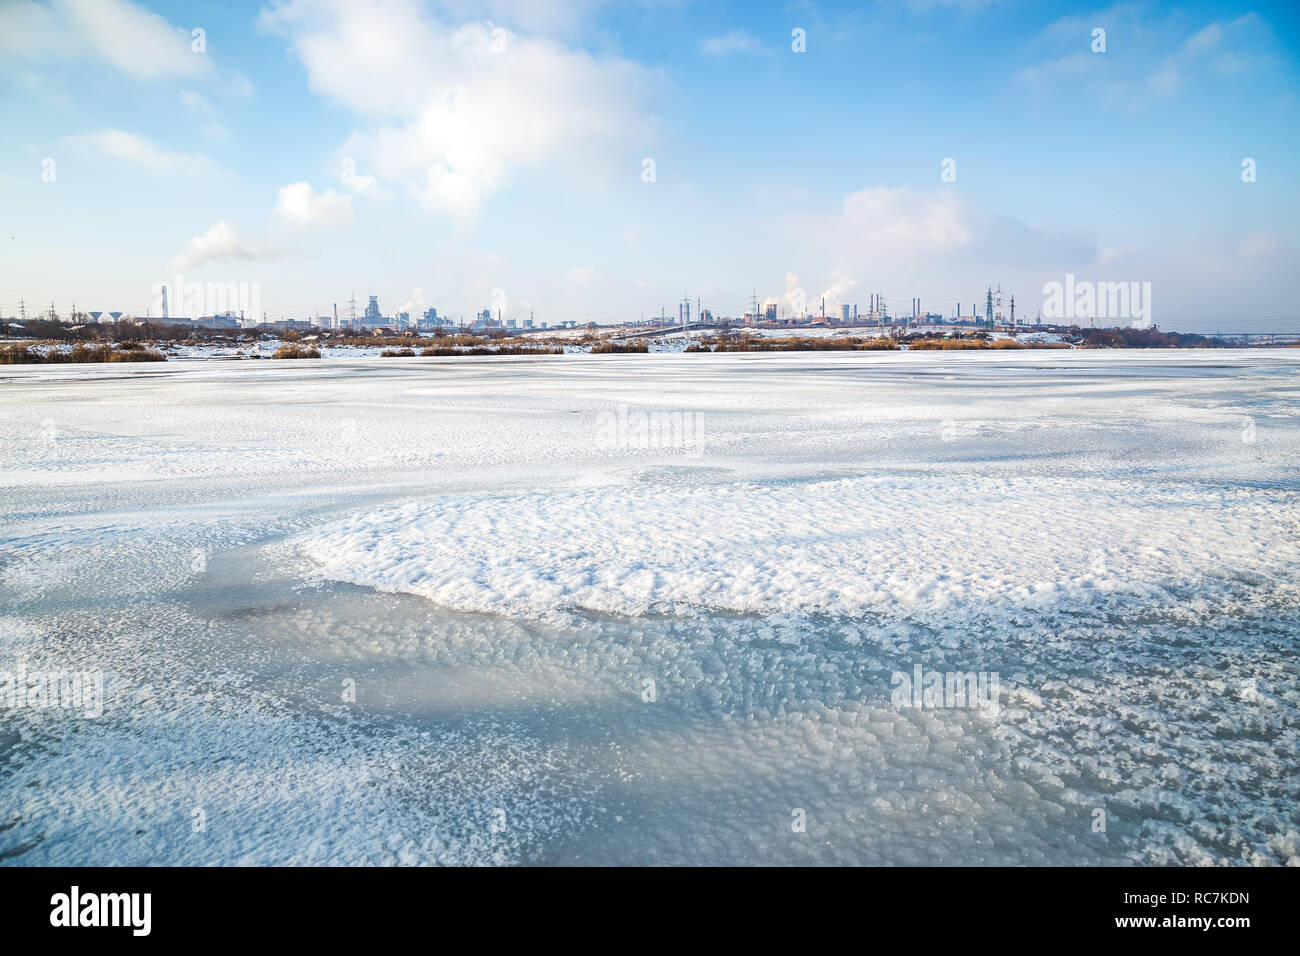 Metallurgie Anlage mit Rauch aus dem Ufer von einem gefrorenen See aus gesehen. Stahl Werk mit Smog auf Wintertag. Ökologie Probleme, Luftverschmutzung. Stockfoto